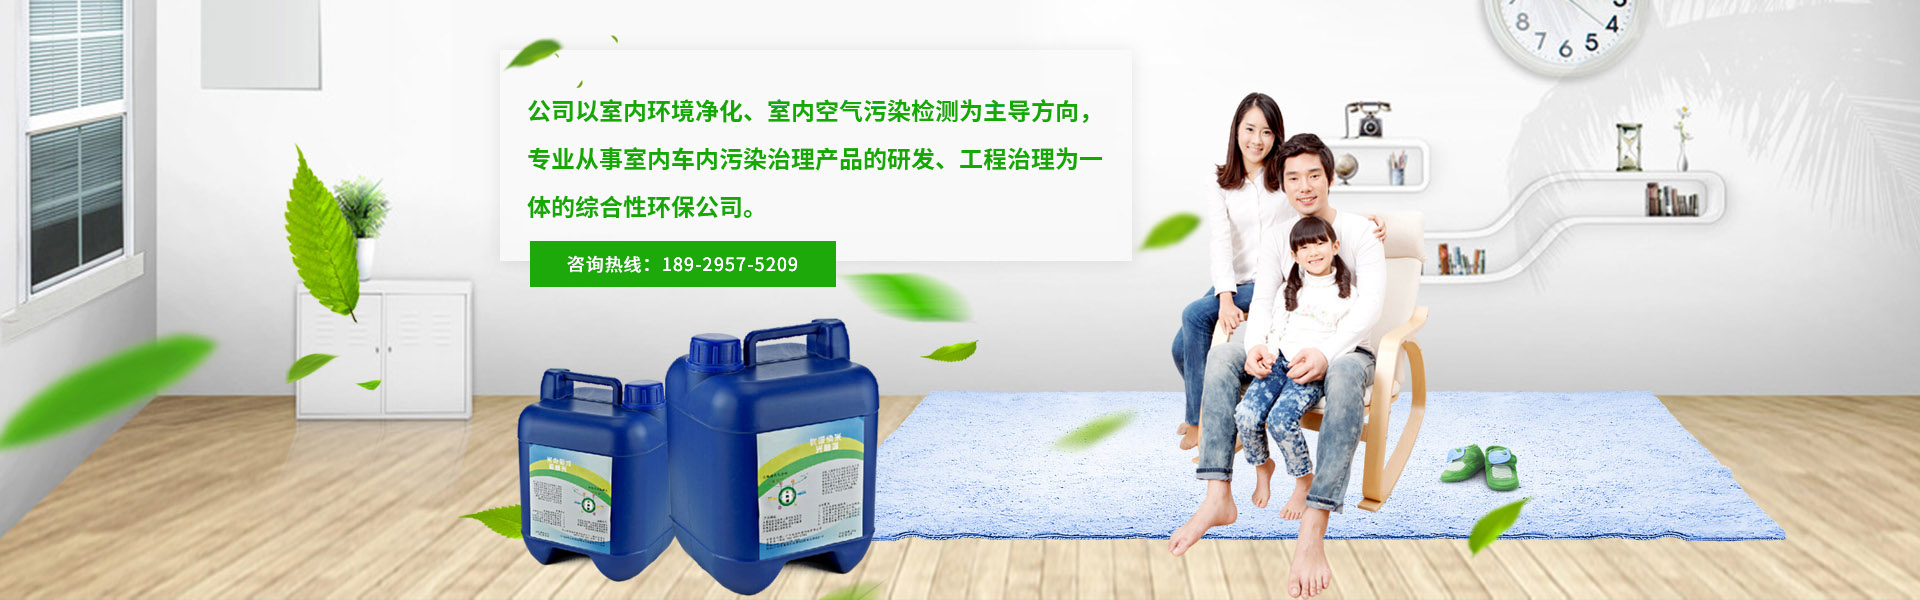 广州除甲醛公司咨询乐纷环保,专业的污染治理公司